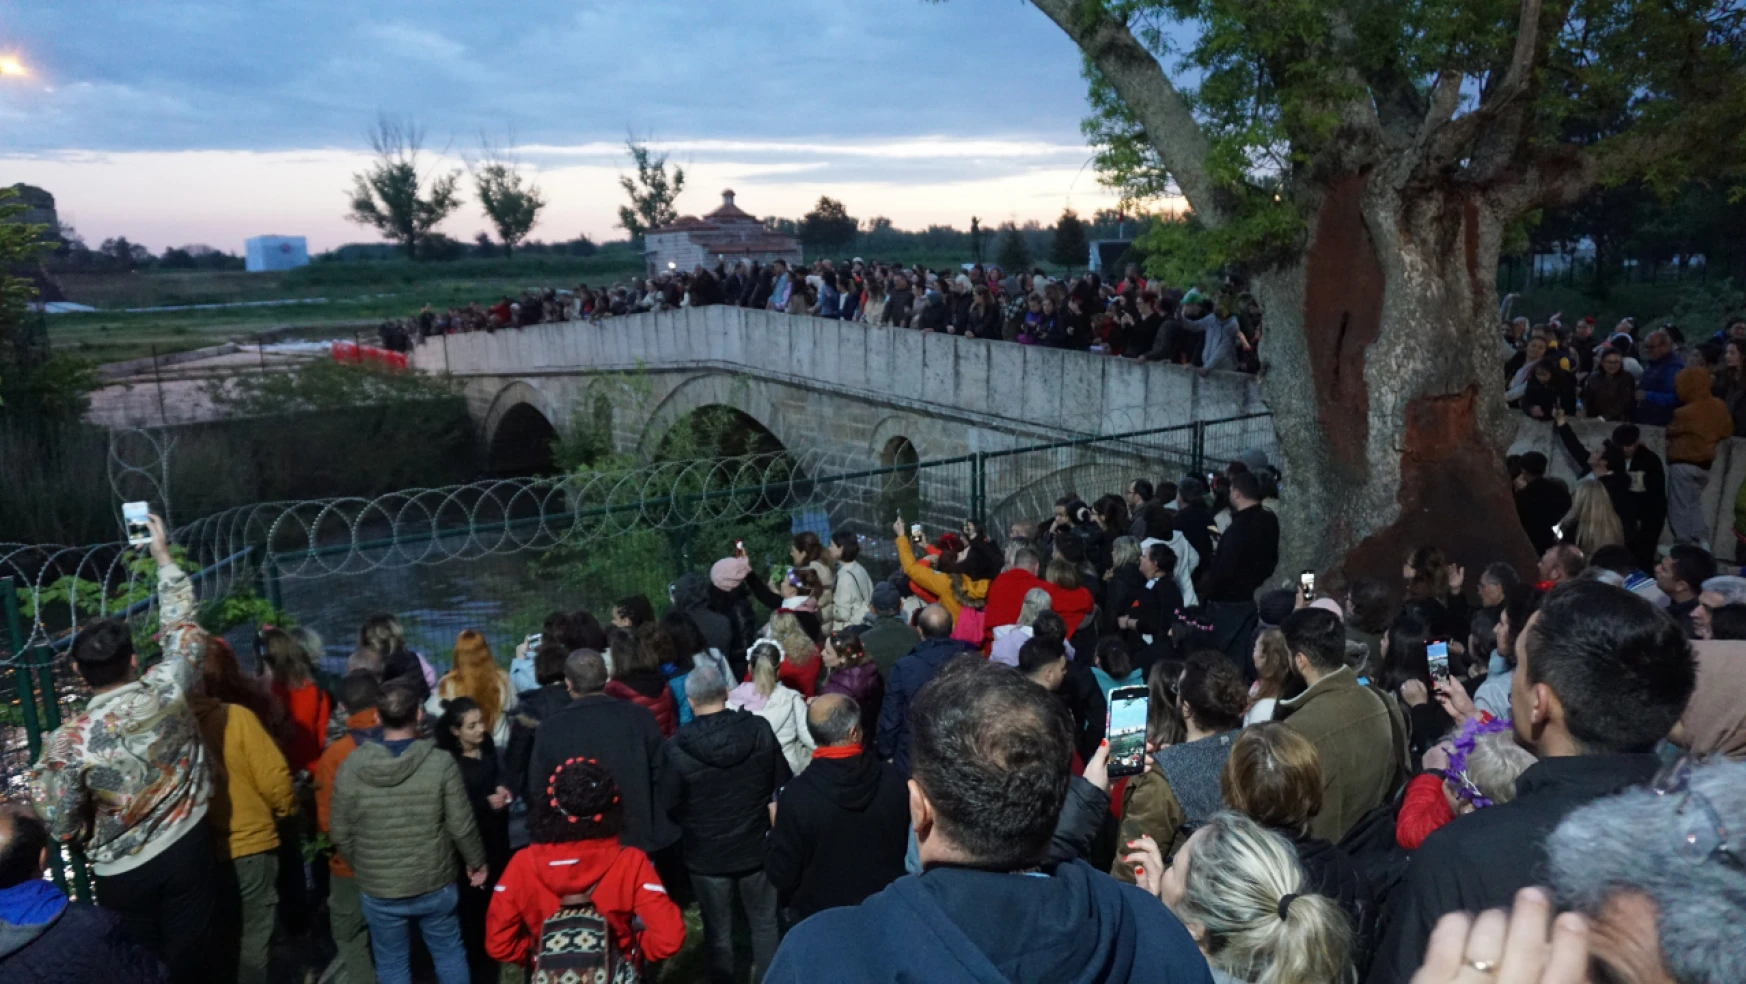 Kakava Şenlikleri Tunca Nehri'ne bırakılan dileklerle sona erdi